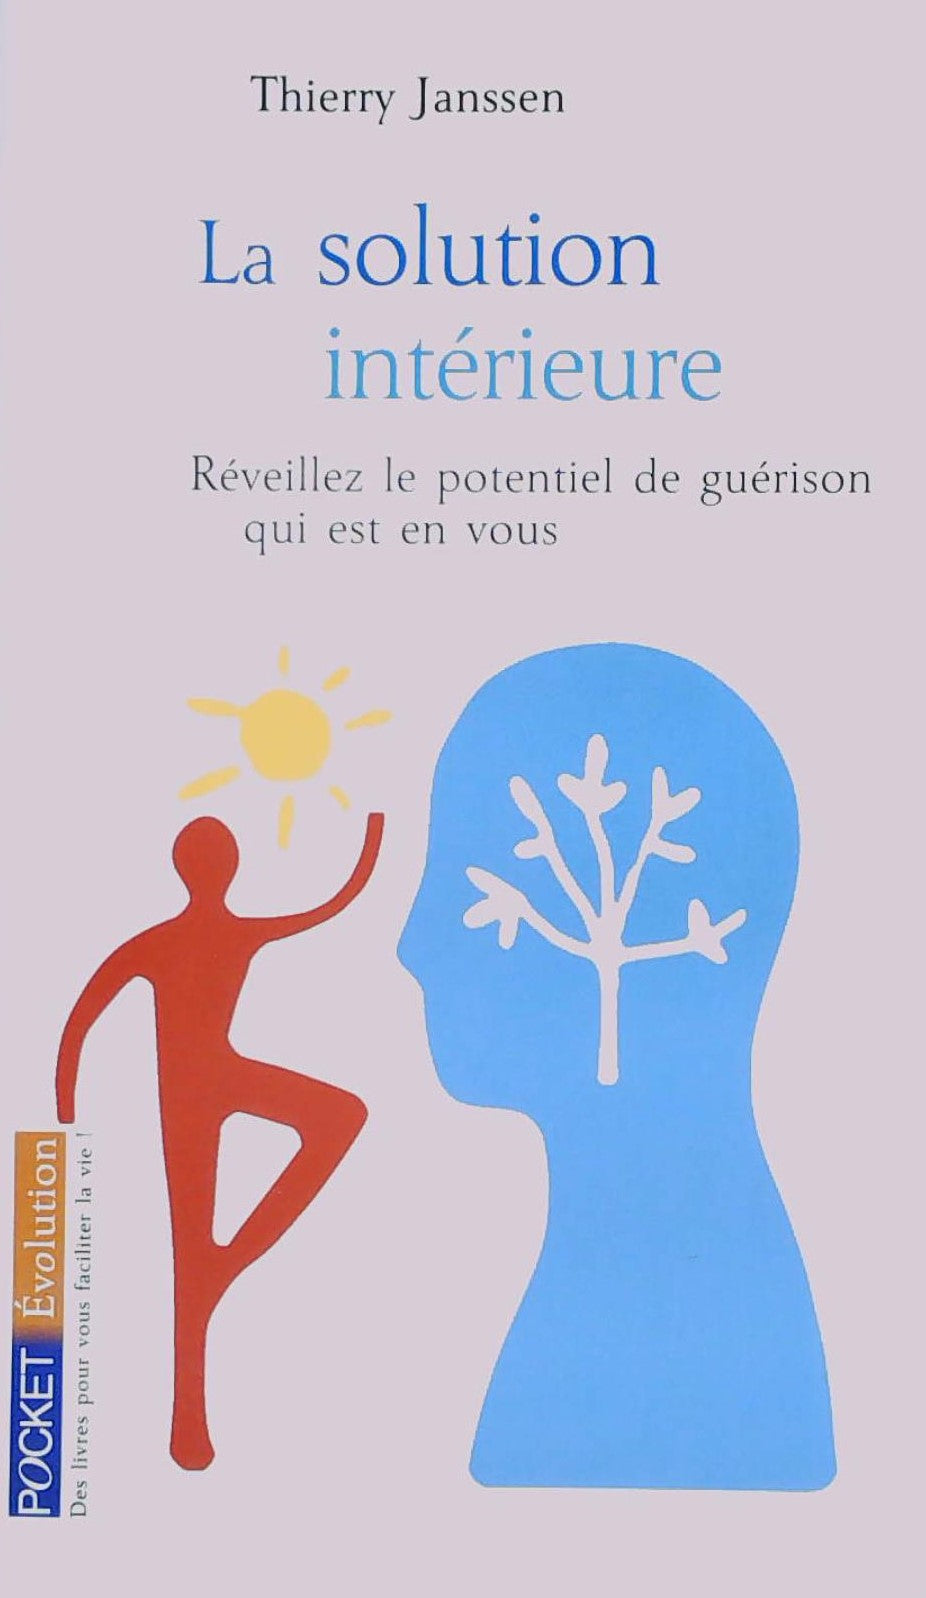 Livre ISBN 2266164910 La solution intérieure : Réveillez le potentiel de guérison qui est en vous (Thierry Janssen)